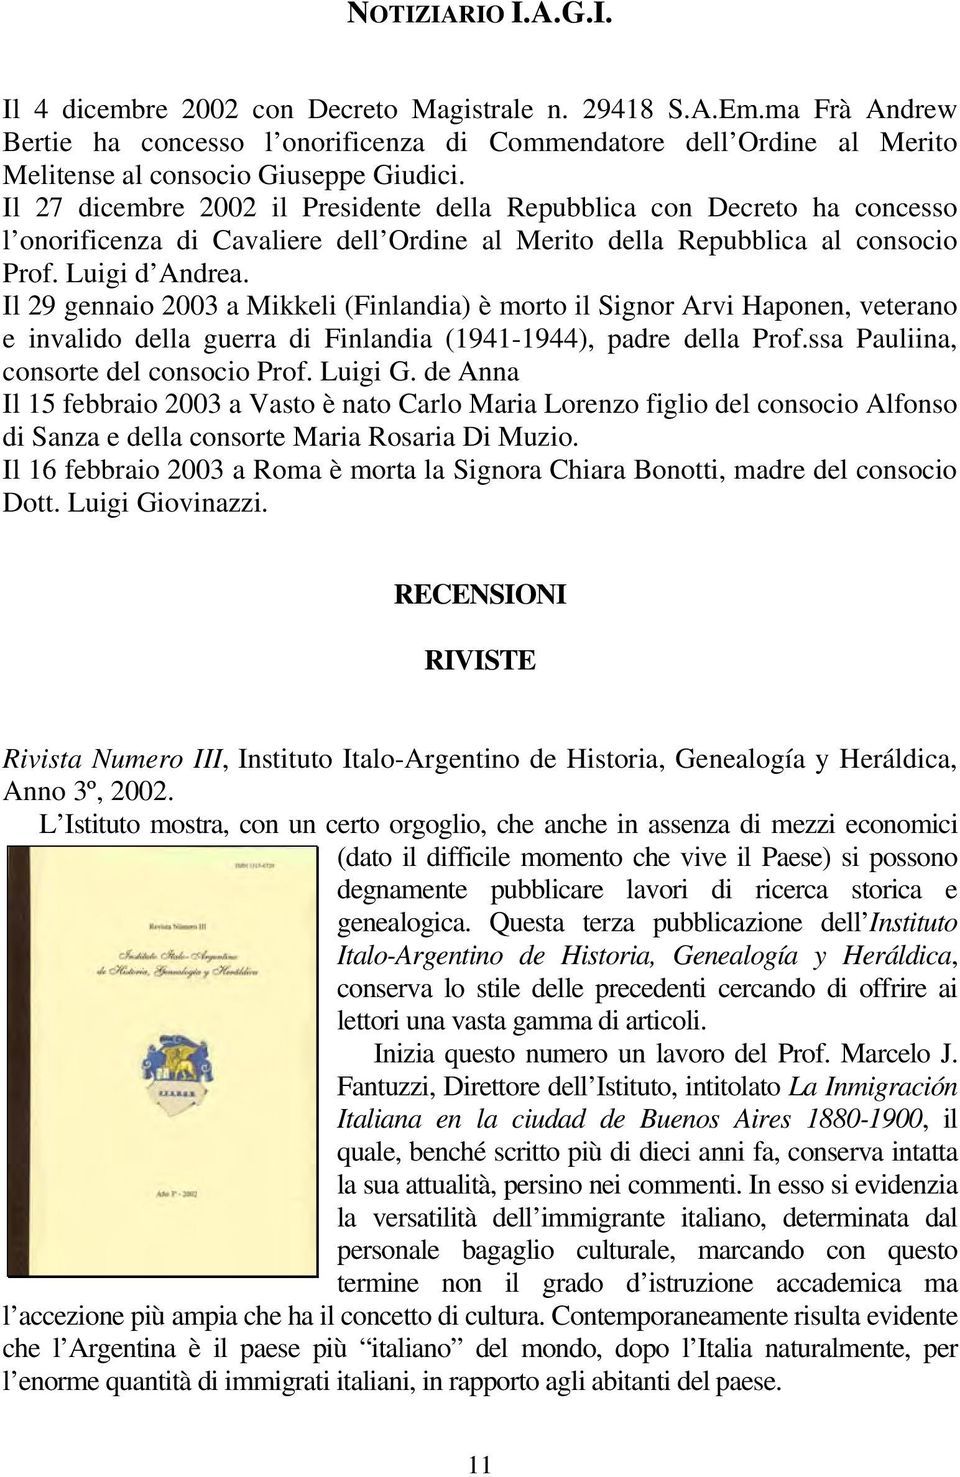 Il 27 dicembre 2002 il Presidente della Repubblica con Decreto ha concesso l onorificenza di Cavaliere dell Ordine al Merito della Repubblica al consocio Prof. Luigi d Andrea.